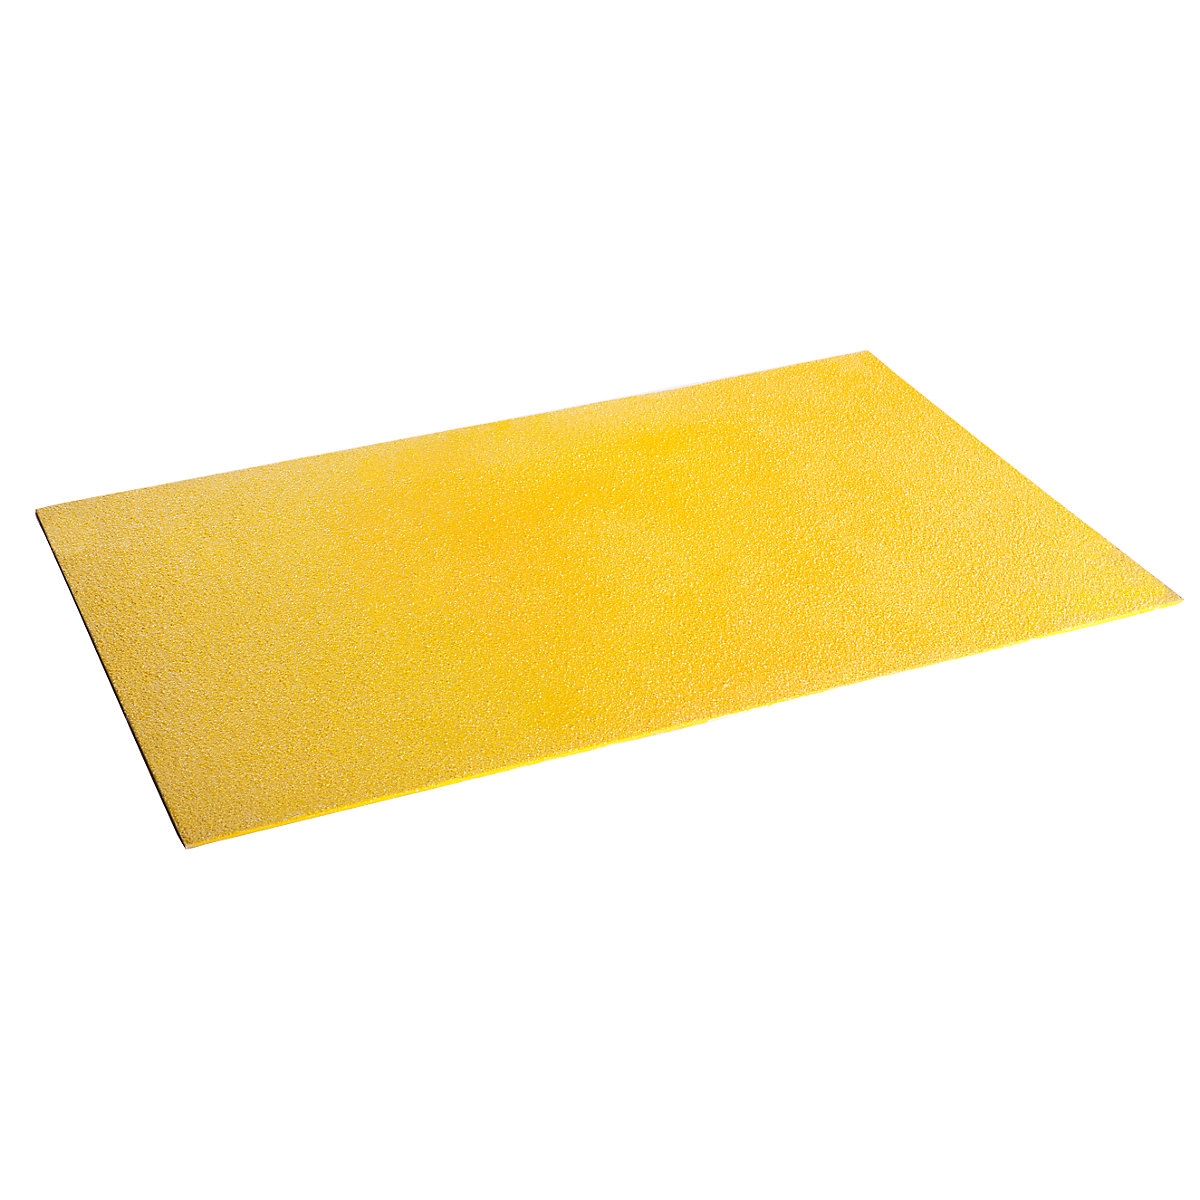 Podna ploča, protuklizna – COBA, DxŠ 1200 x 800 mm, u žutoj boji-8